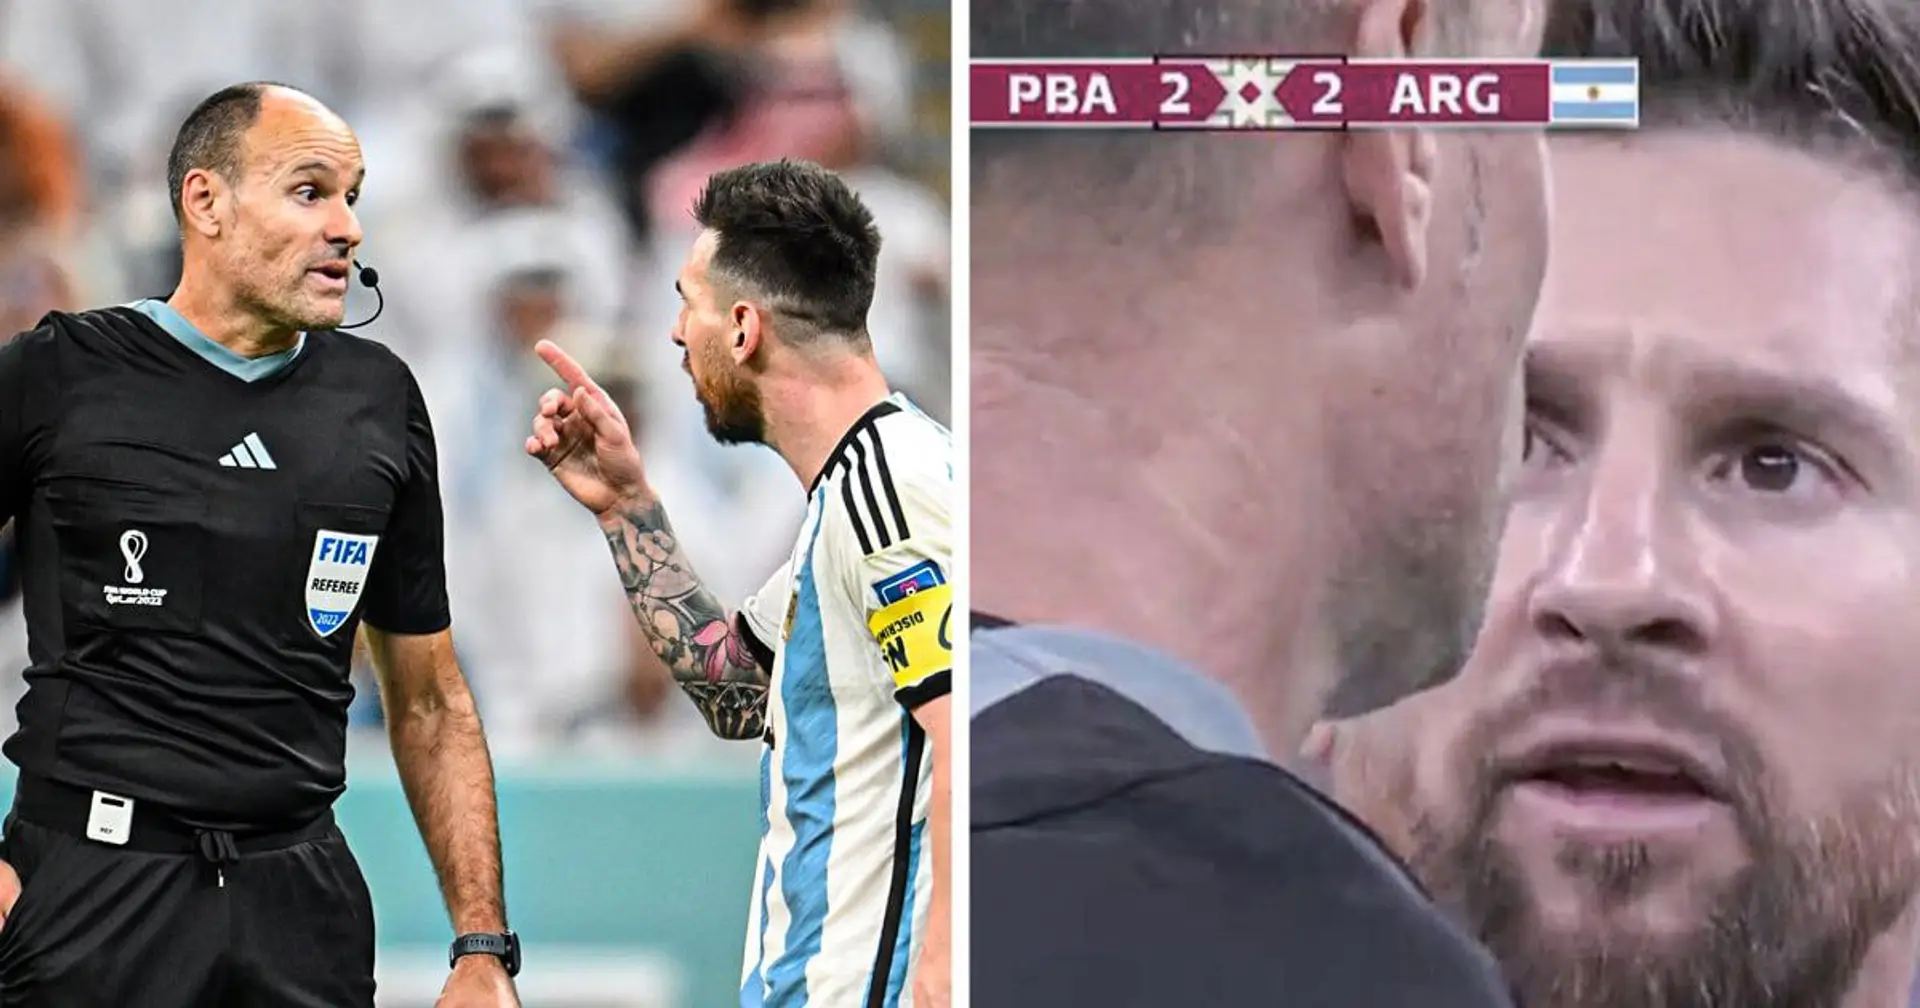 "FIFA kann einen solchen Schiri auf diesem Niveau nicht einsetzen": Messi greift Mateu Lahoz an, obwohl Argentinien gewinnt